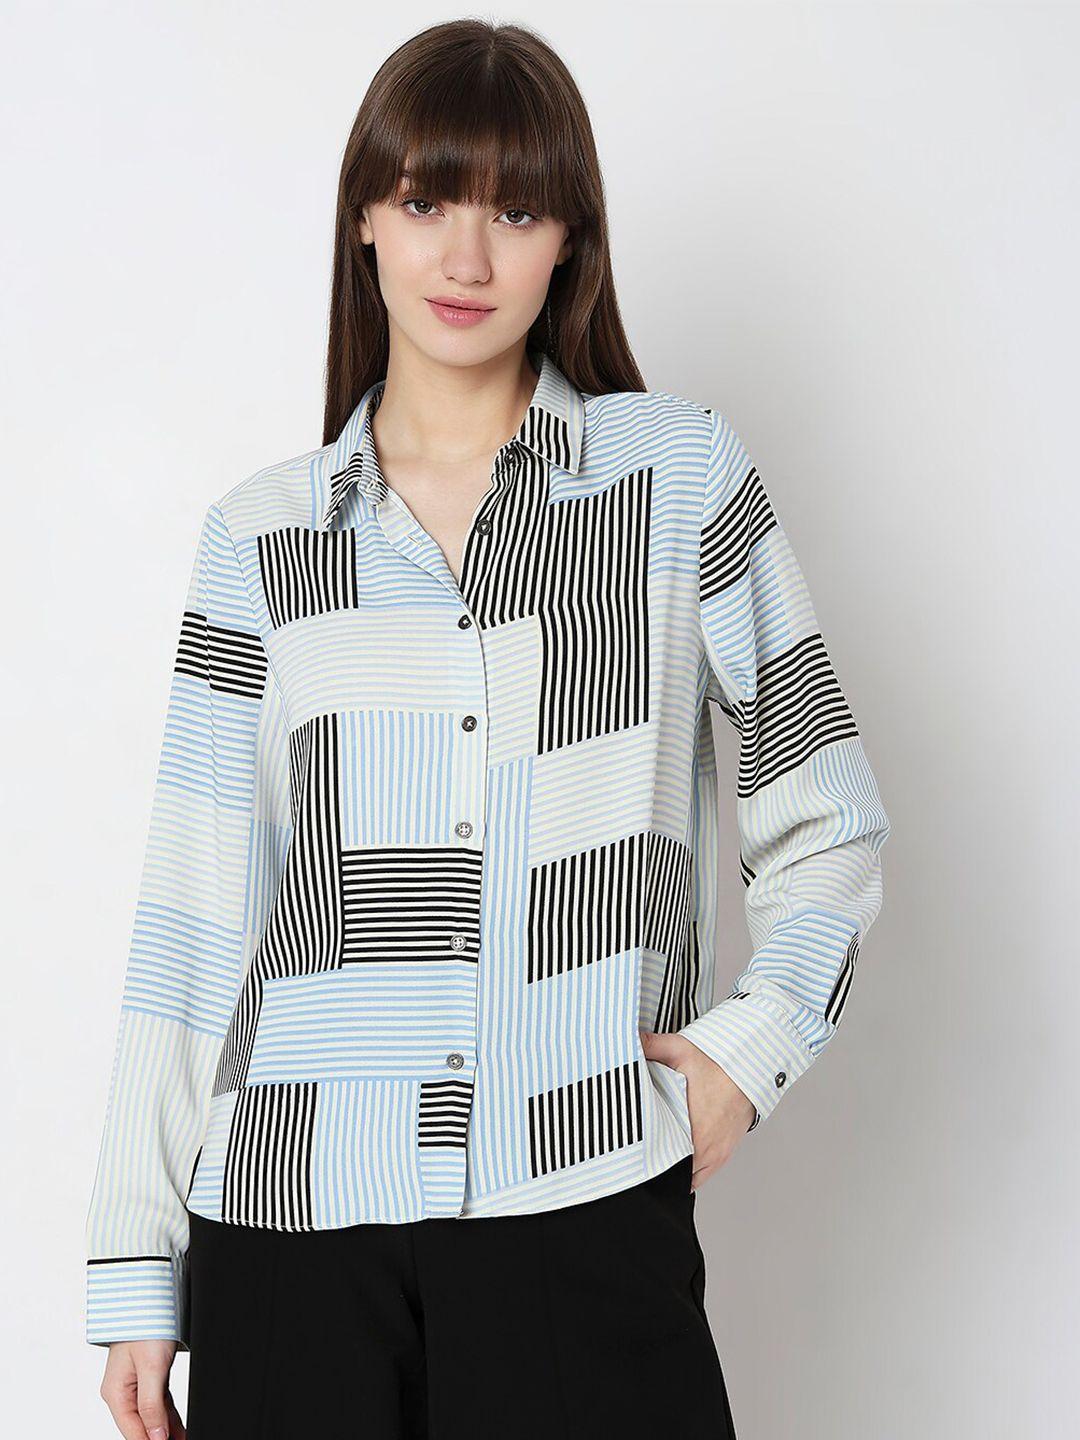 vero moda striped spread collar casual shirt